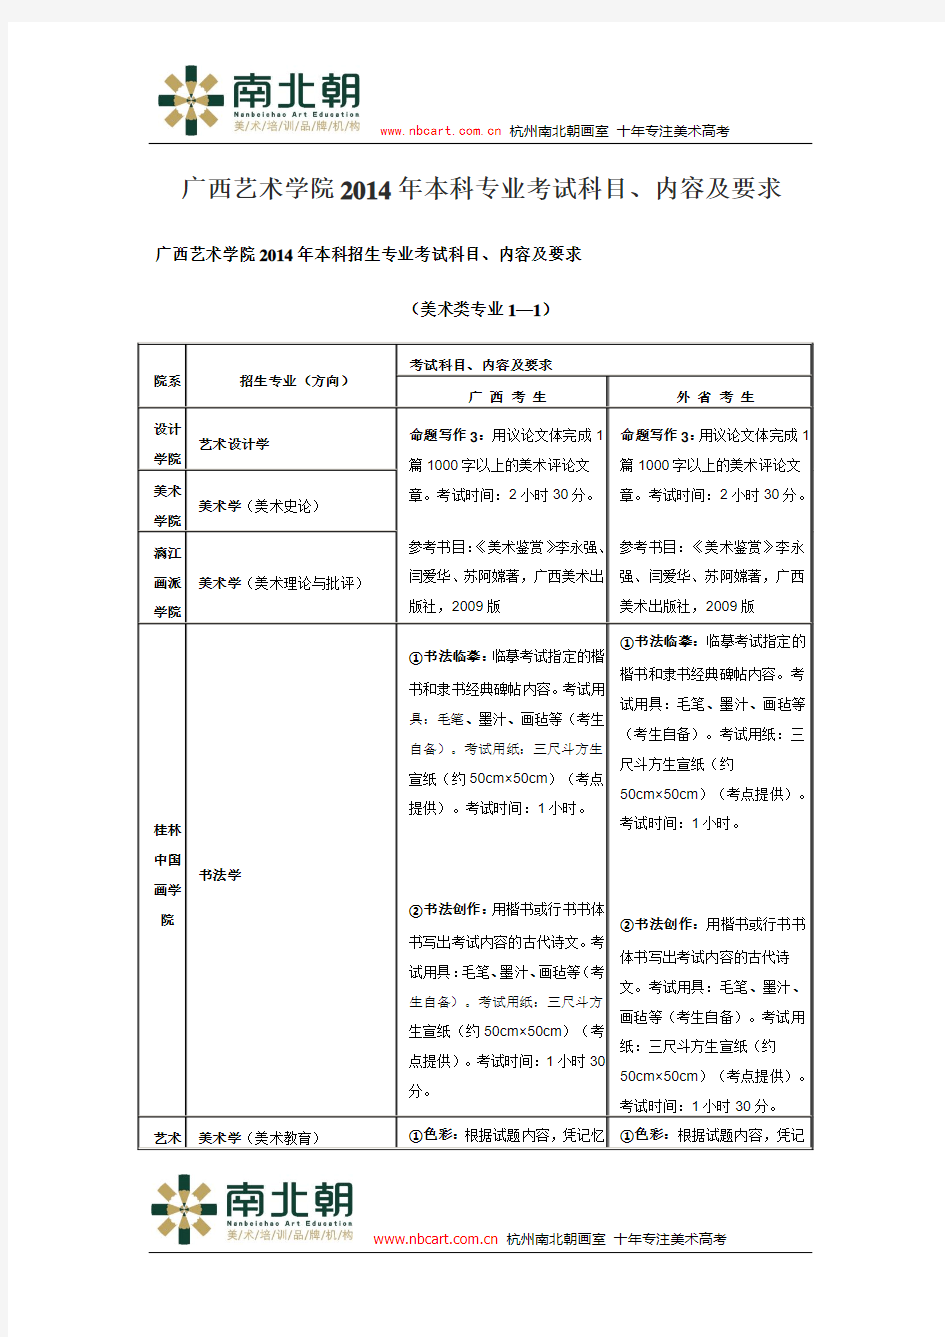 广西艺术学院2014年本科专业考试科目、内容及要求